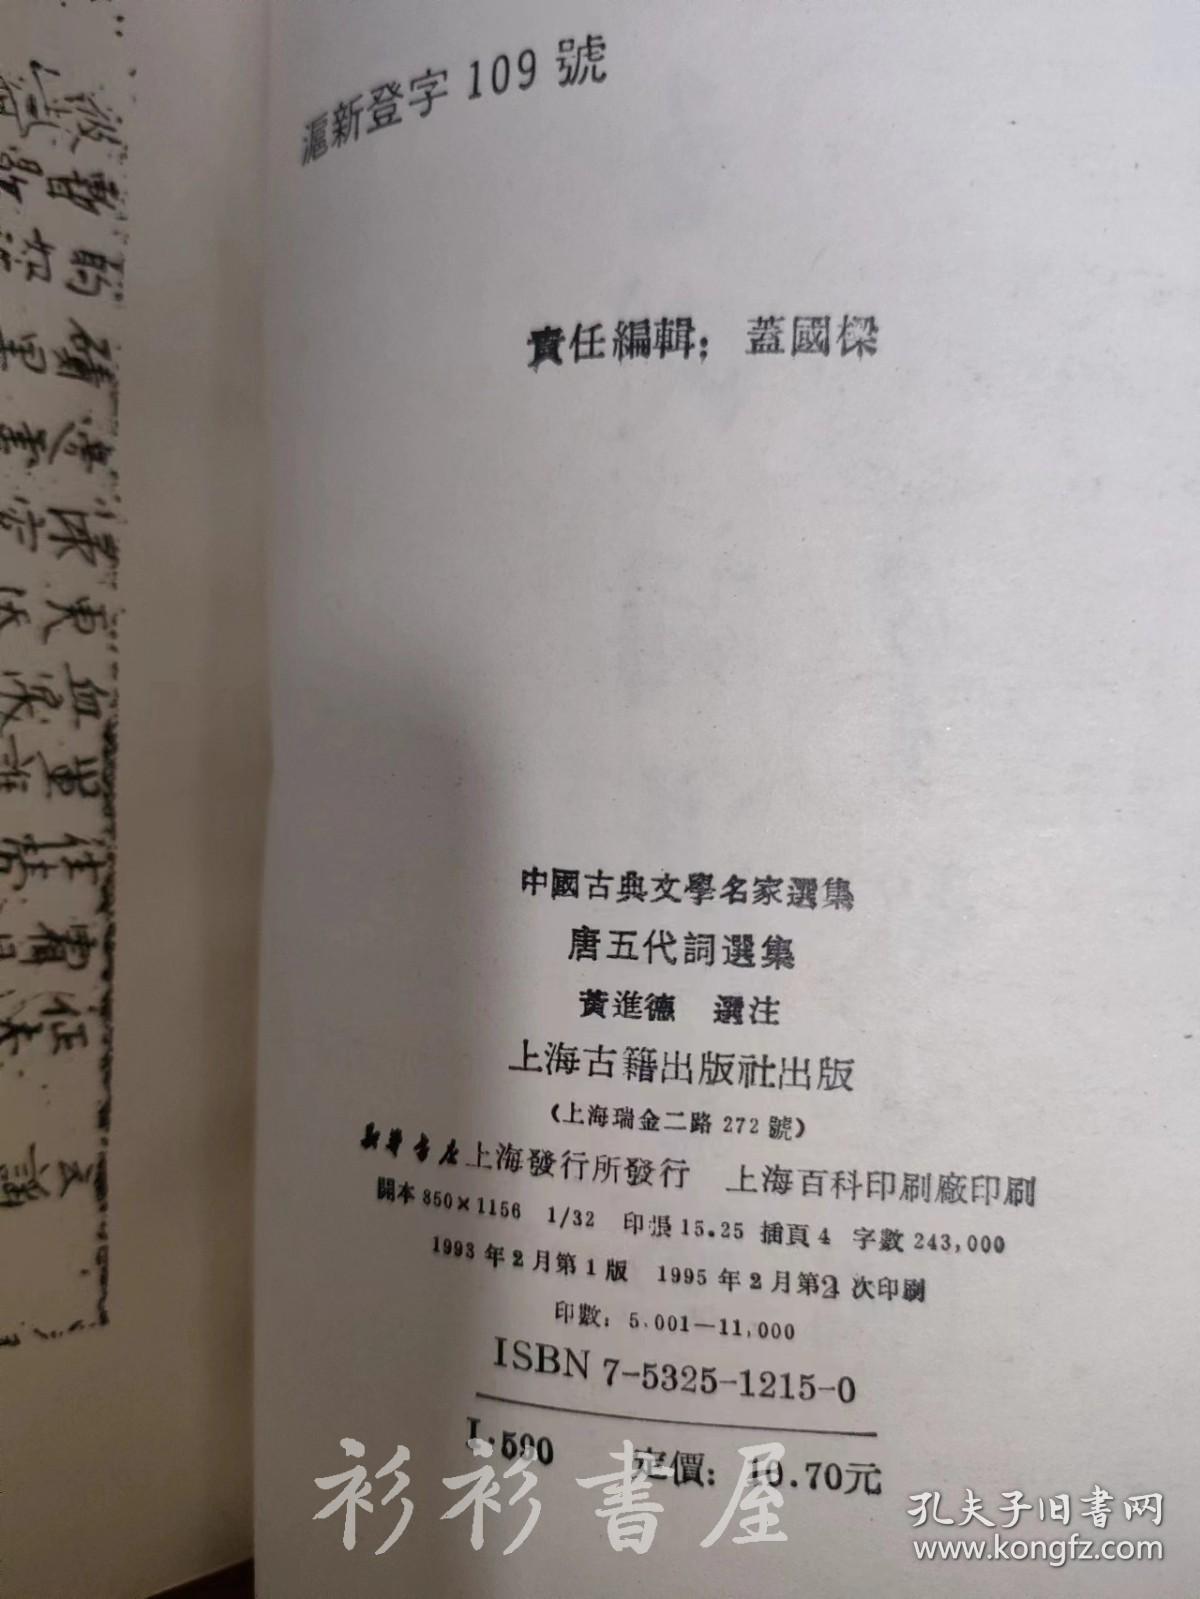 【繁体竖排】《唐五代词选集》黄进德选注 上海古籍出版社1993年版